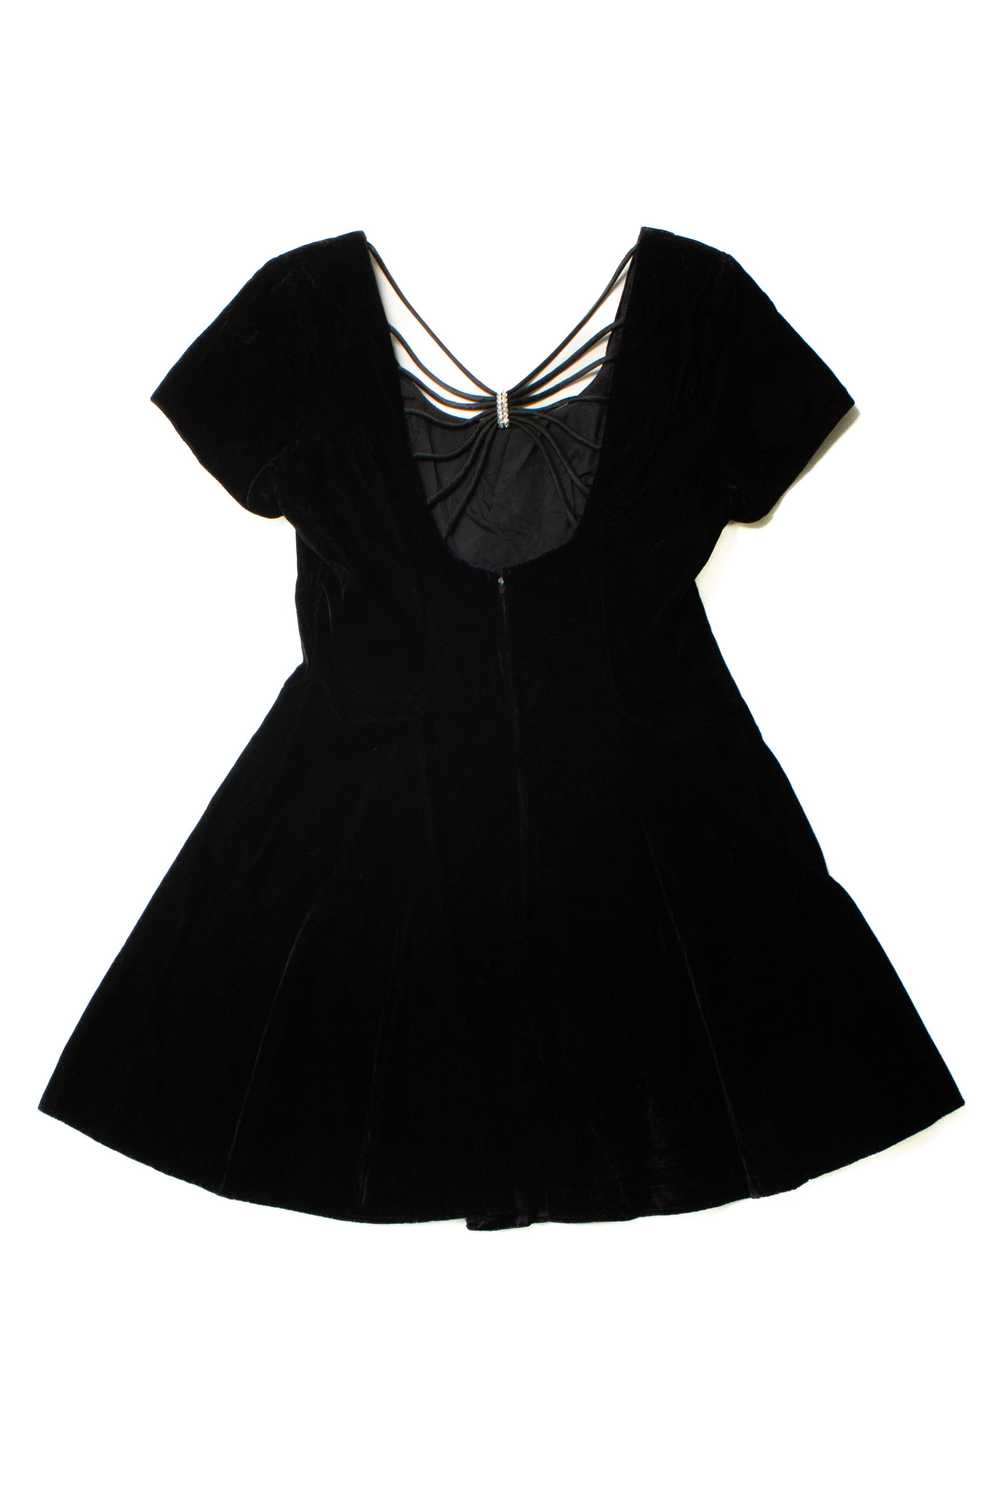 Vintage Rhapsody Black Velvet Dress - image 8